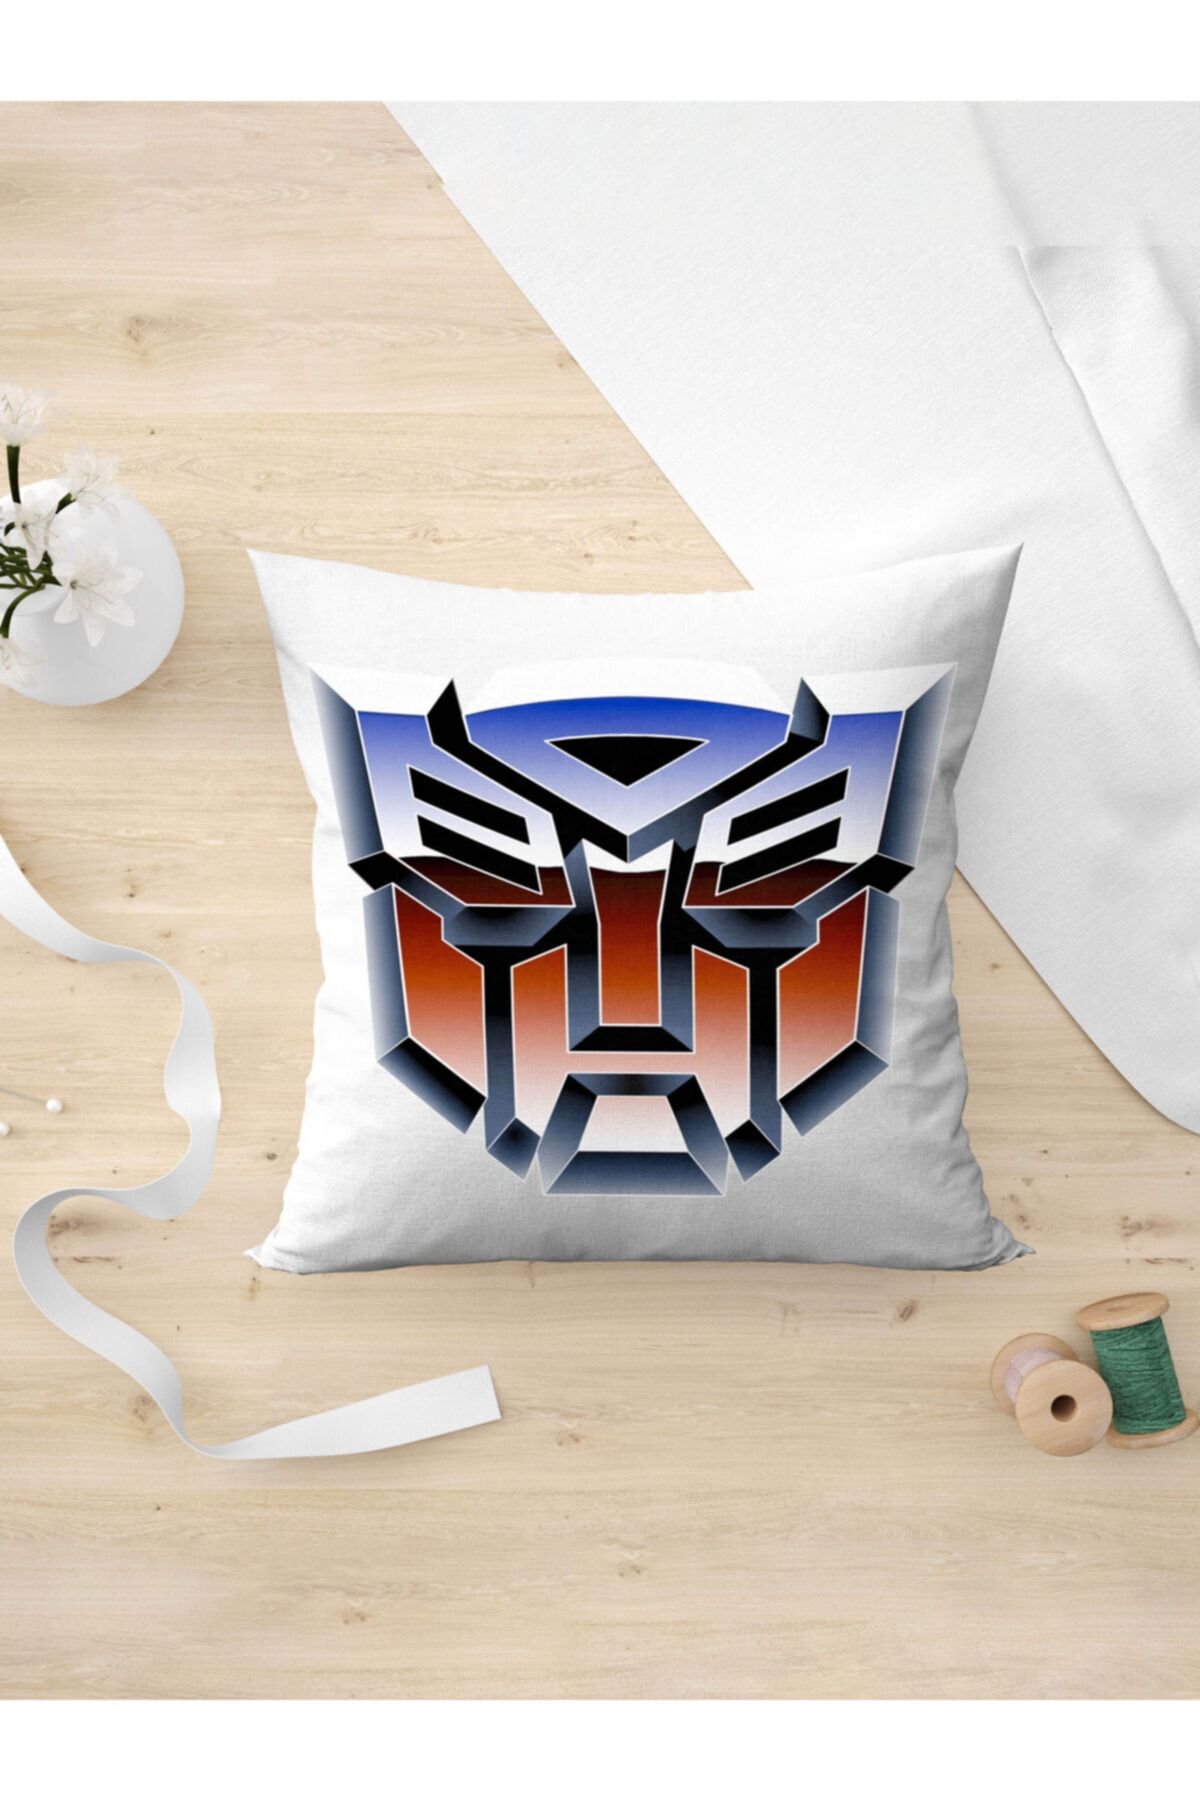 Panorama Ajans Transformers Otobotlar Autobots Logo Yastık Kılıfı